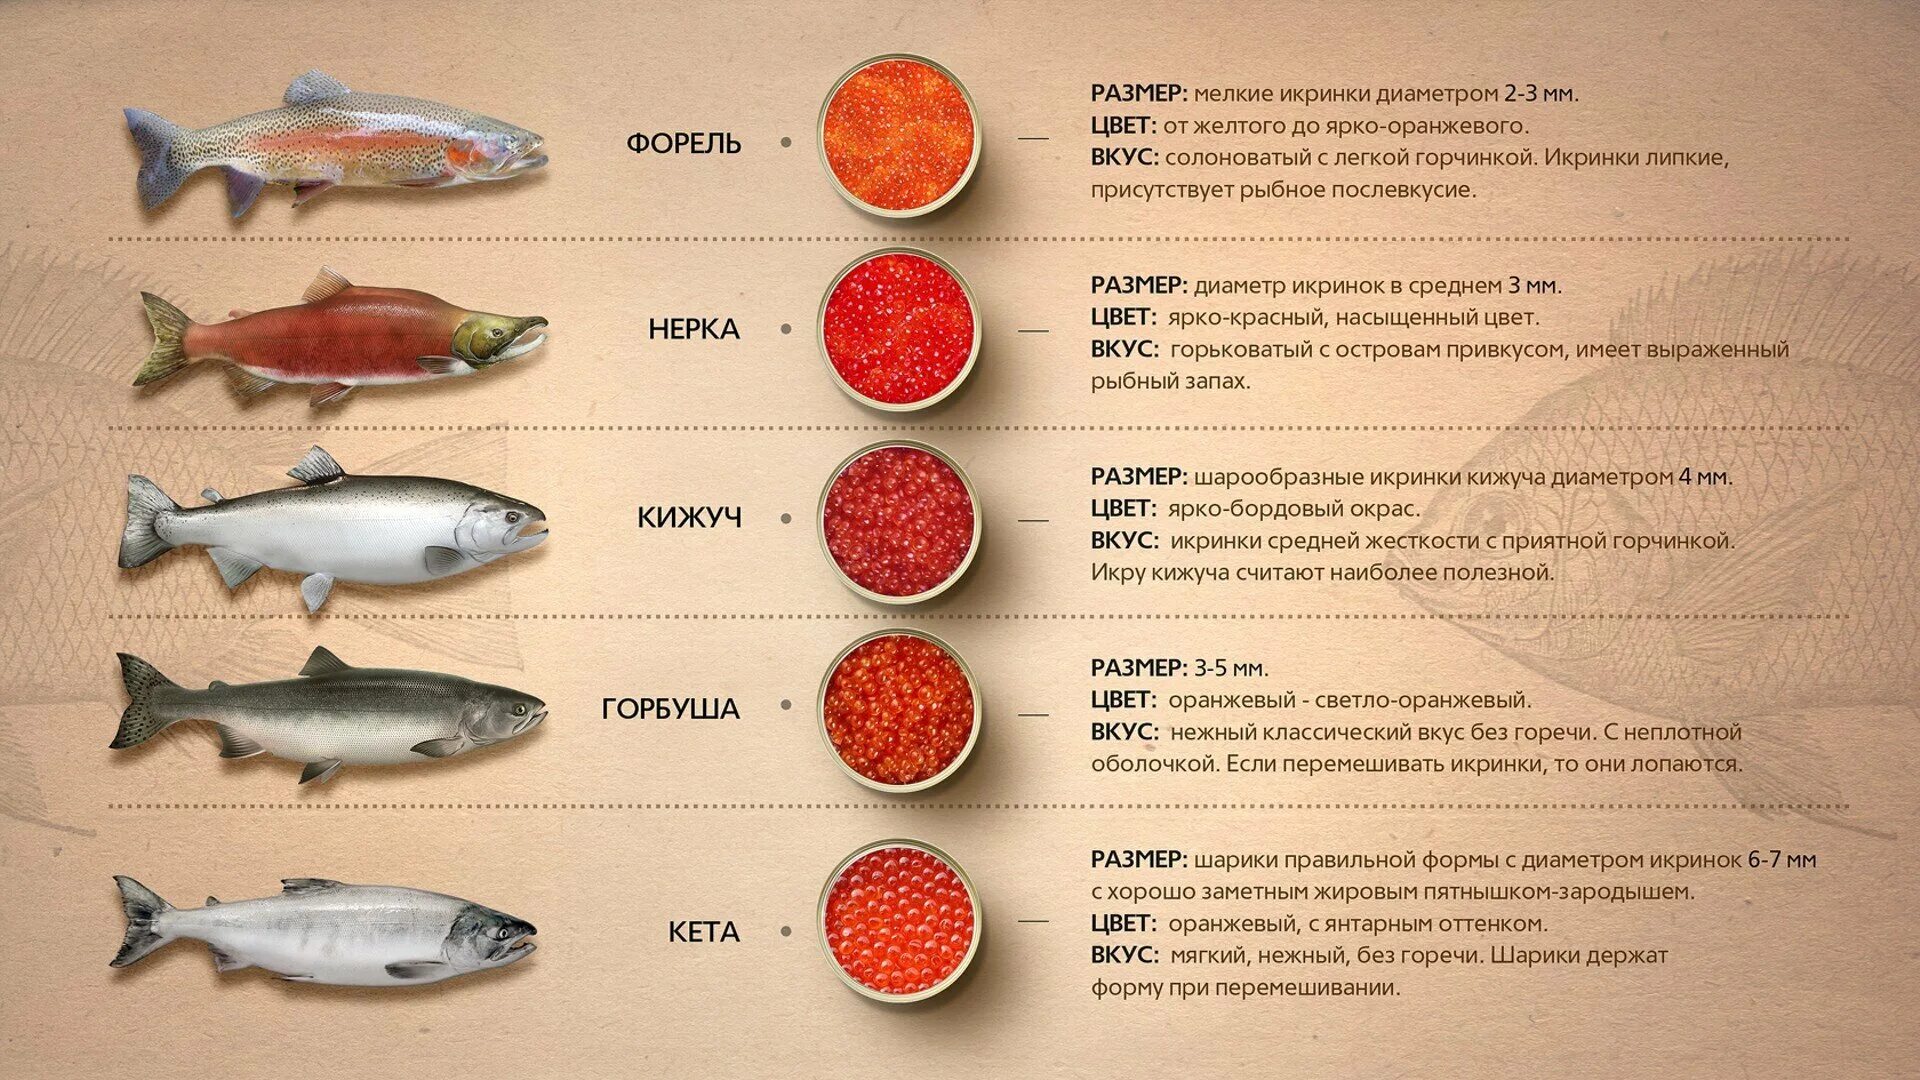 Сравнение размеров рыб. Рыбы семейства лососевых названия. Красная рыба виды названия. Размер икры лососевых рыб. Диаметр икринок лососевых рыб.